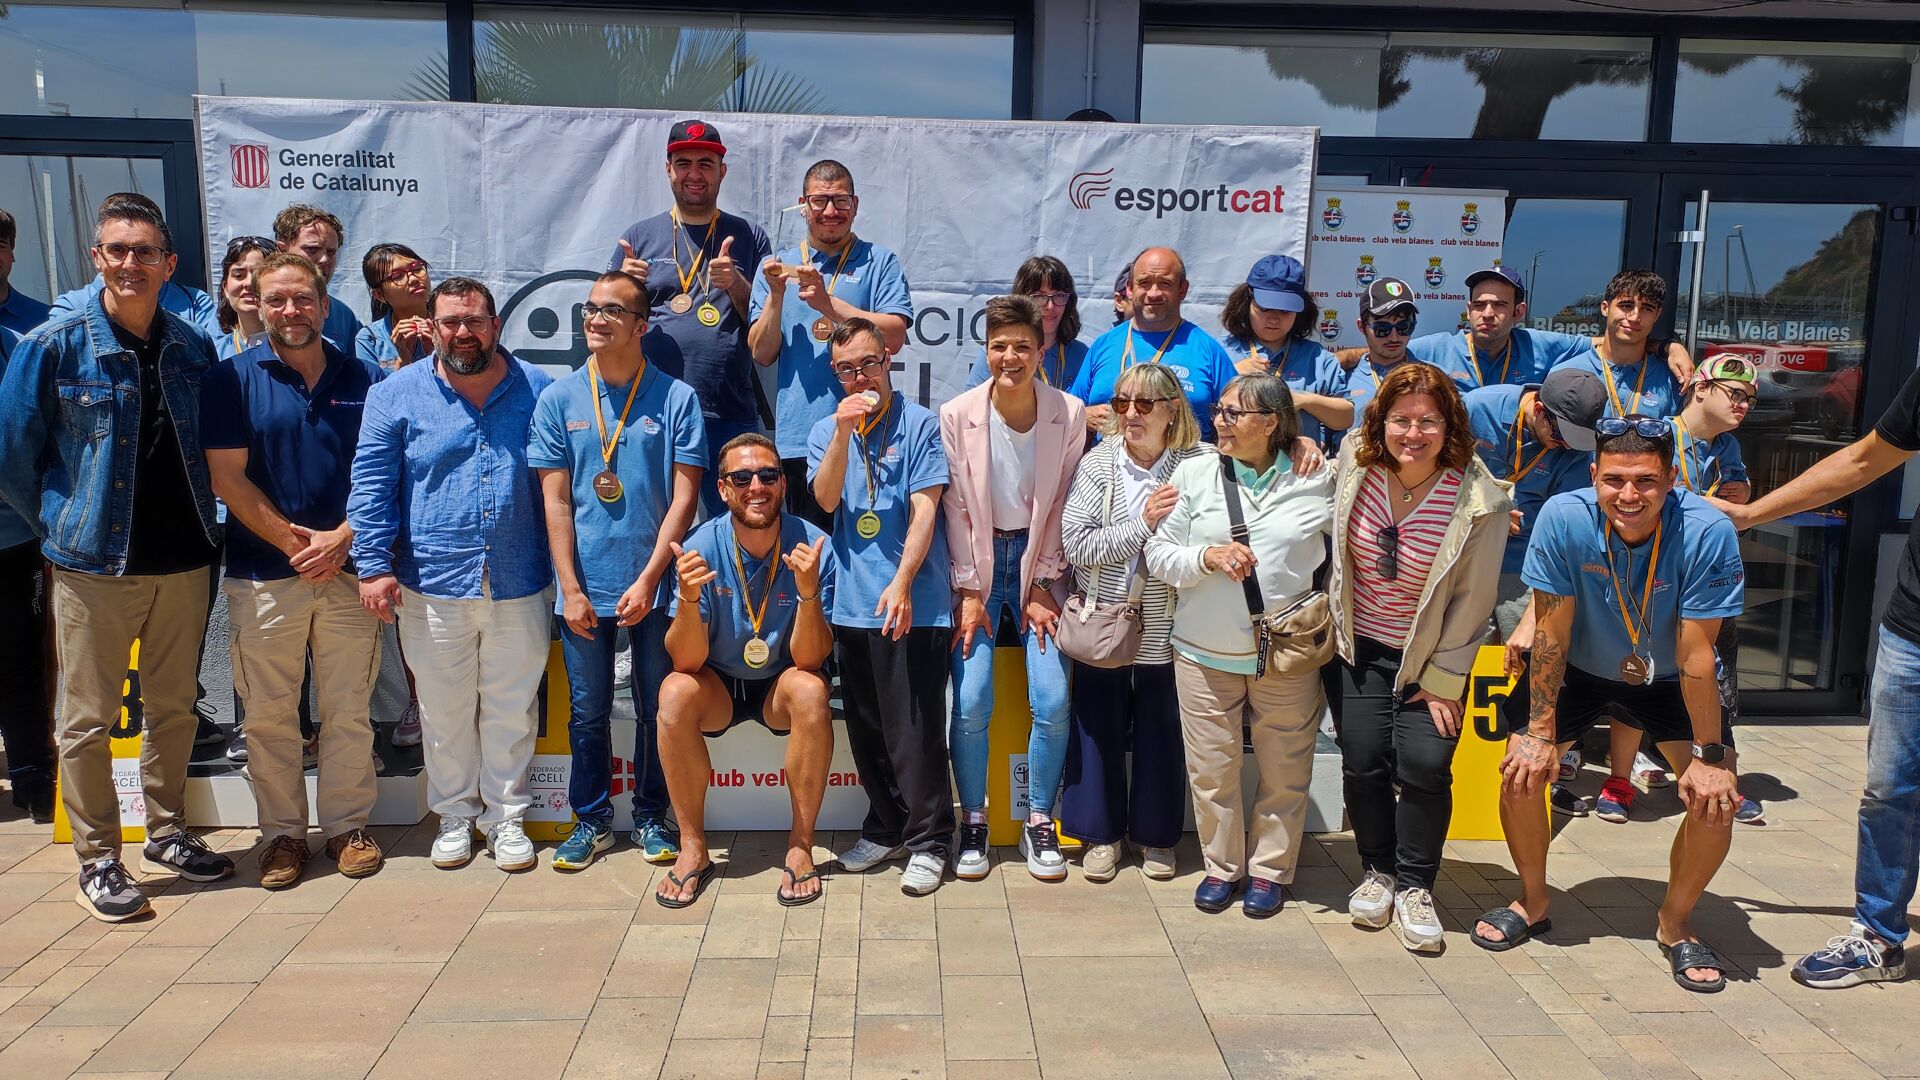 El Club Esportiu el Vilar i el Club de Vela Blanes, tornen a revalidar el títol de Campions de Catalunya de vela per a persones amb discapacitat intel·lectual.